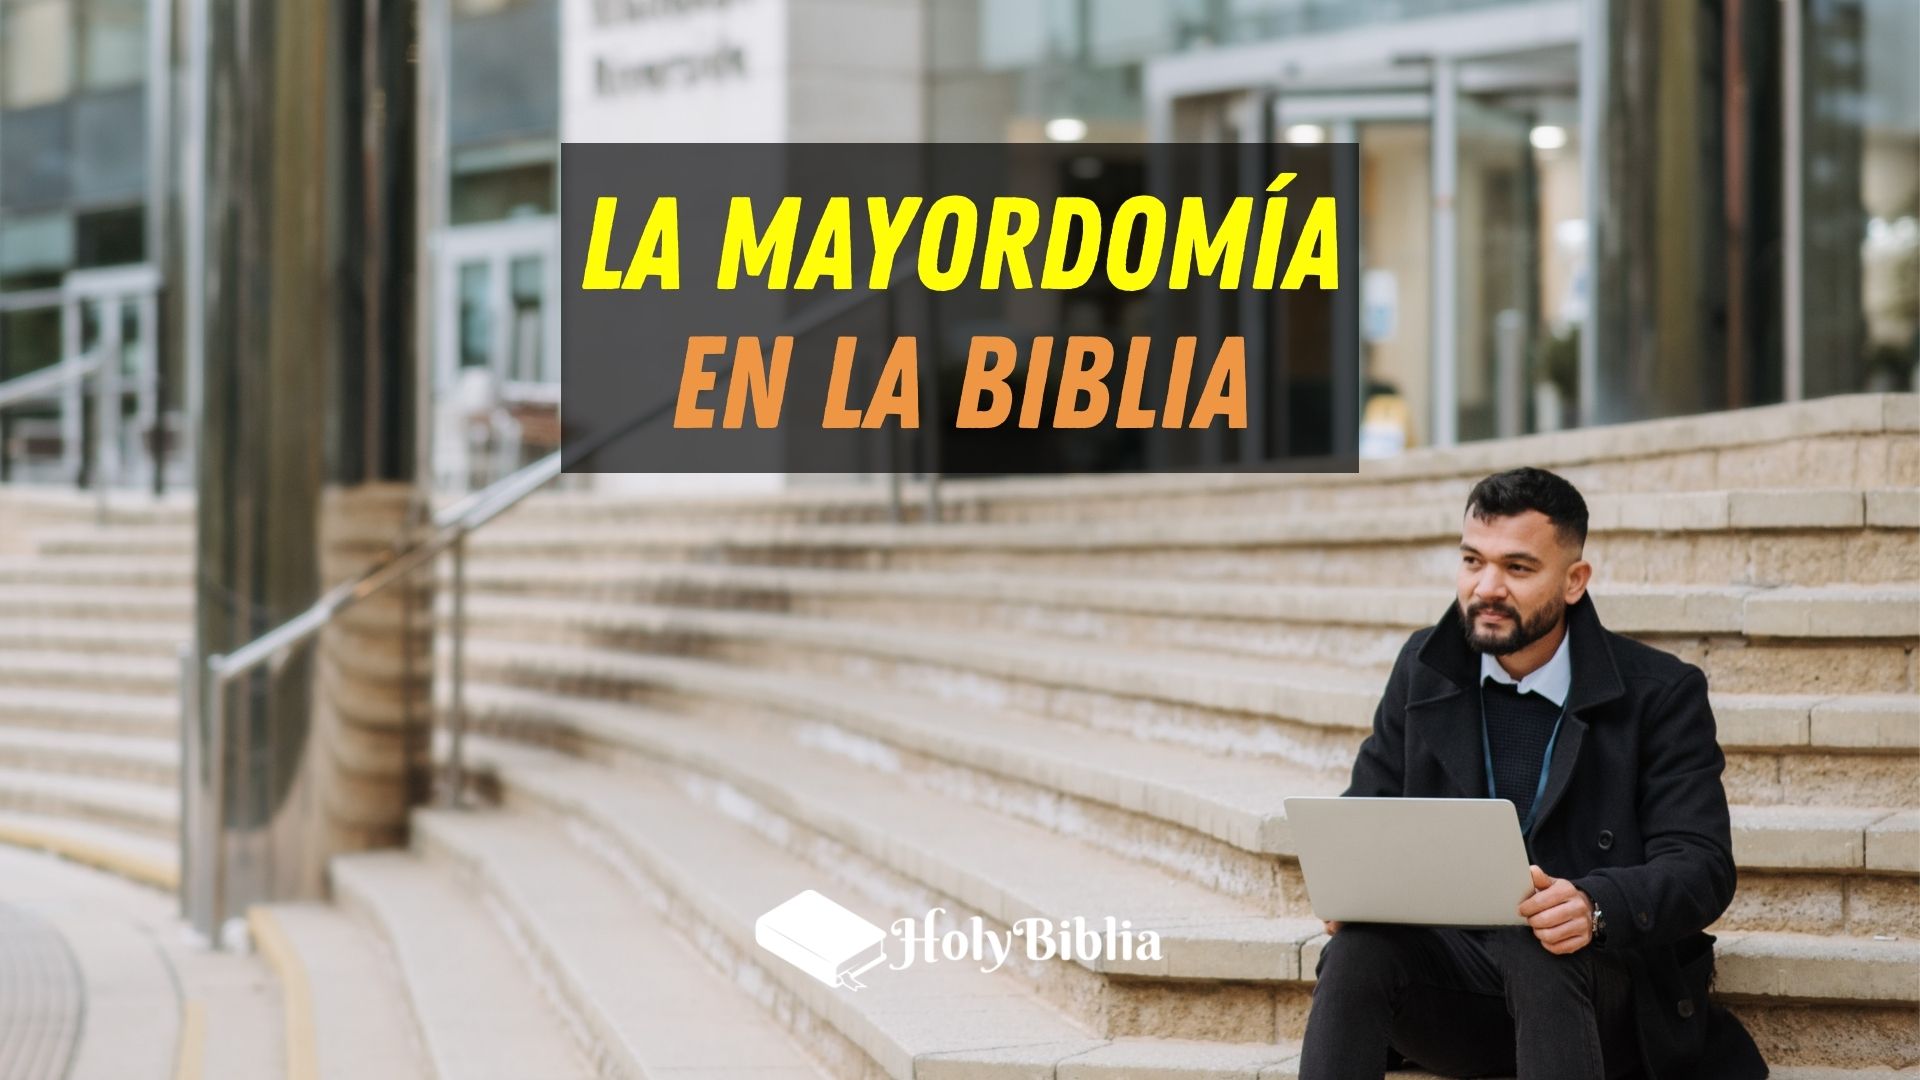 ᐅ ✔️ ¿Qué es la Mayordomía en la Biblia? |【Holybiblia】